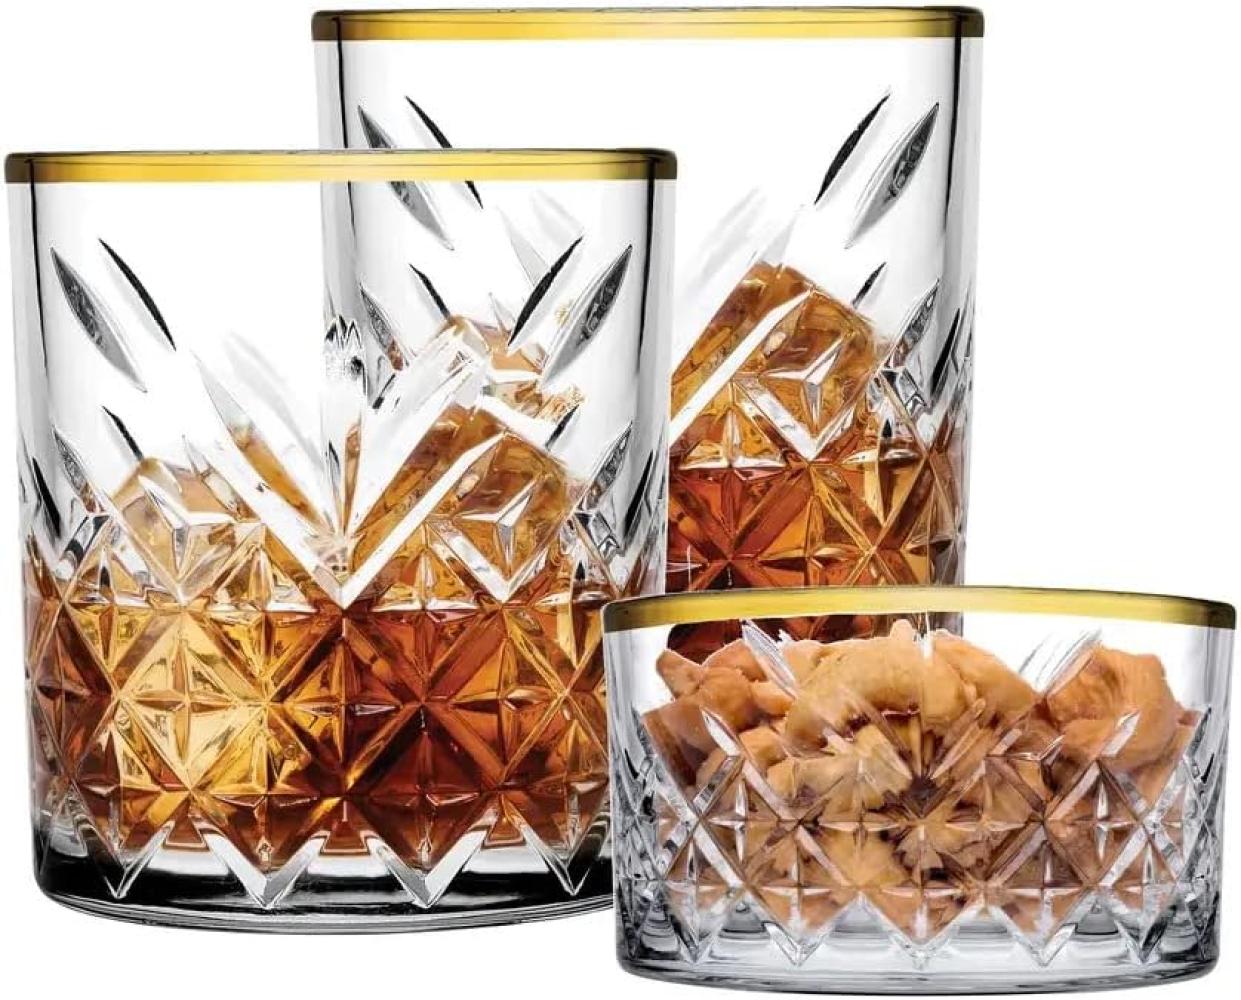 Pasabahce 96818 Timeless Golden Touch 3 teilig im Kristall-Design Retro Design - 2 Whisky Glas und 1 Kristall-Schale Bild 1